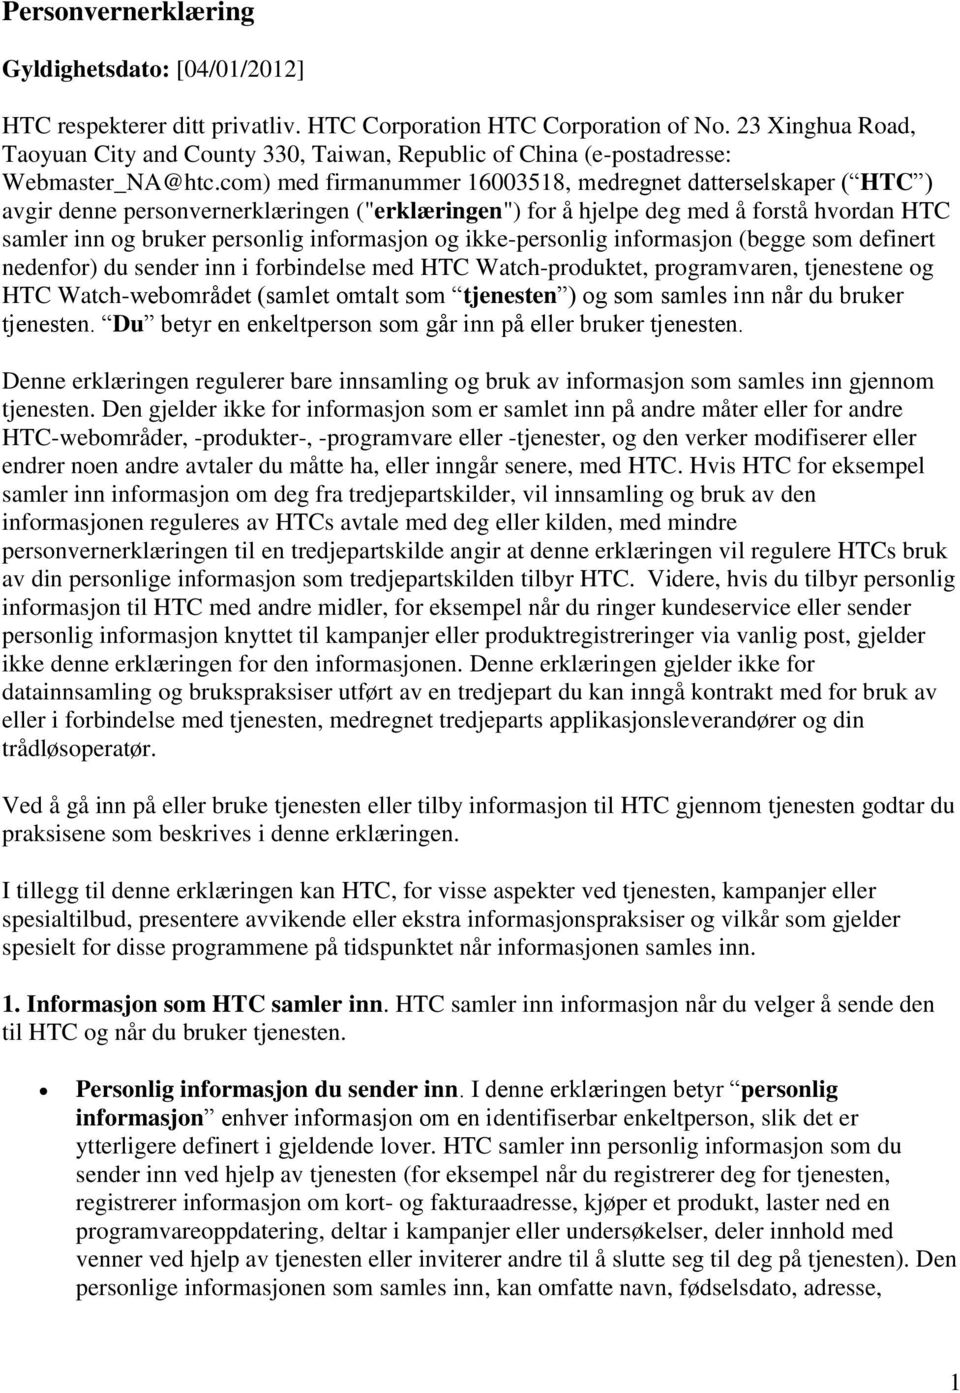 com) med firmanummer 16003518, medregnet datterselskaper ( HTC ) avgir denne personvernerklæ ringen ("erklæ ringen") for å hjelpe deg med å forstå hvordan HTC samler inn og bruker personlig